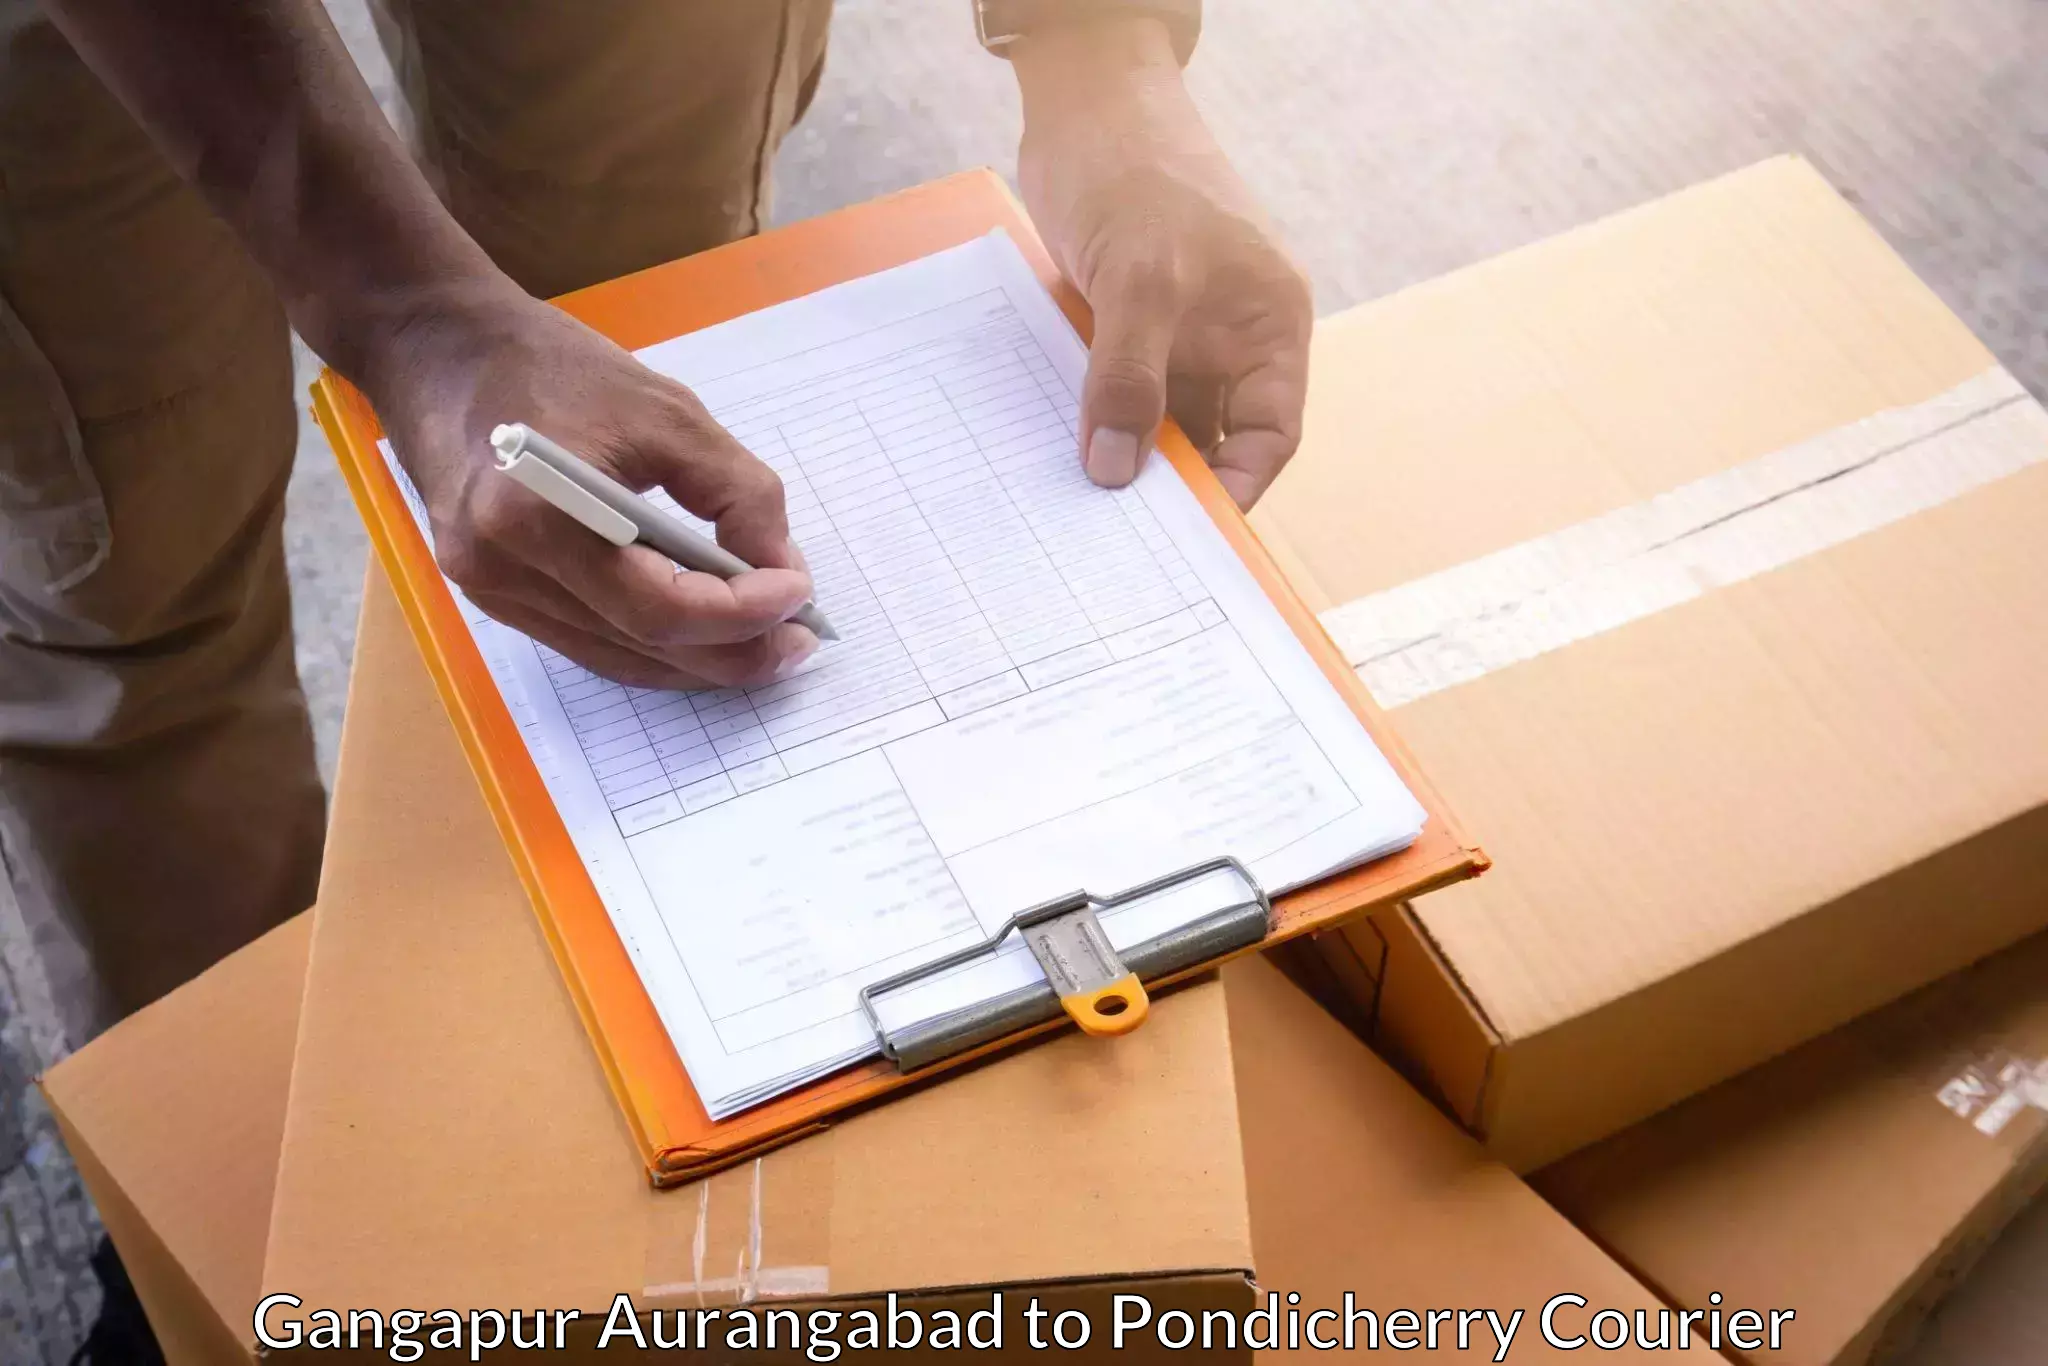 Affordable parcel service Gangapur Aurangabad to Karaikal